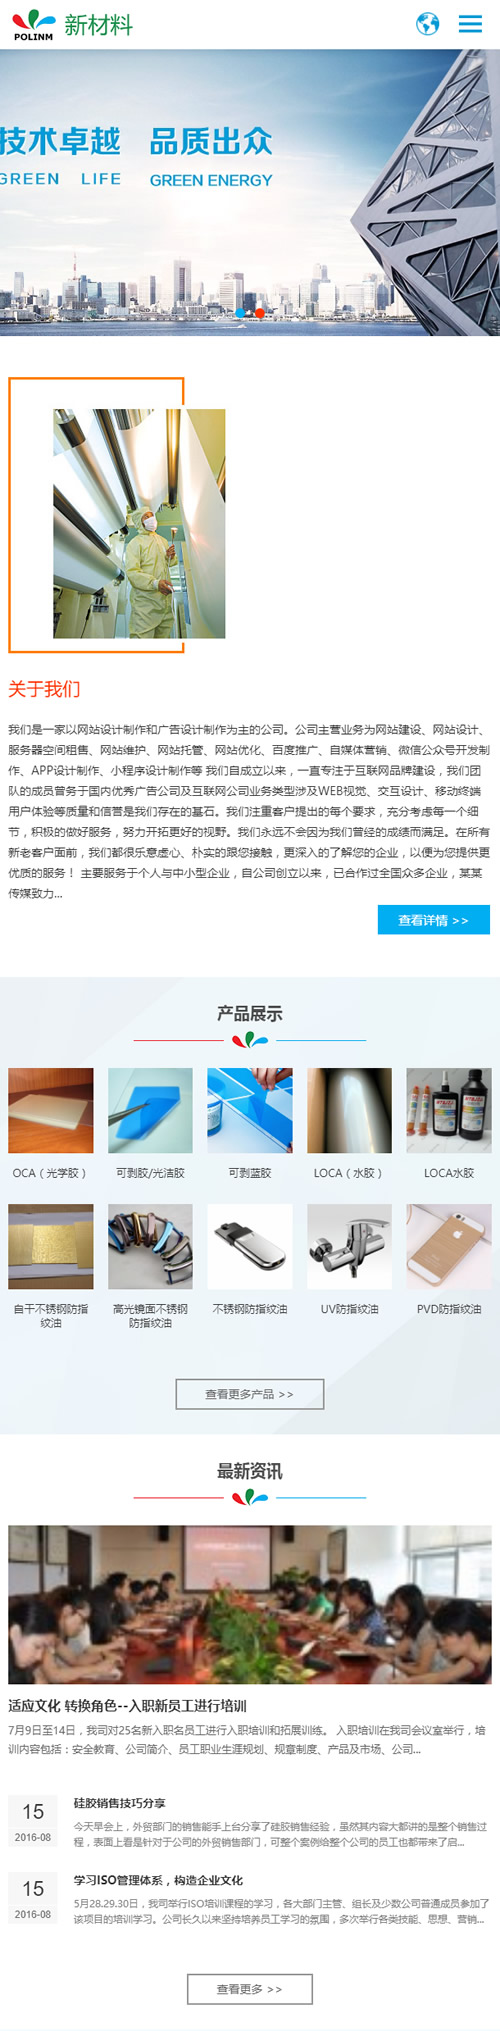 中英文双语响应式新材料类网站源码 HTML5新型环保材料网站织梦dedecms模板